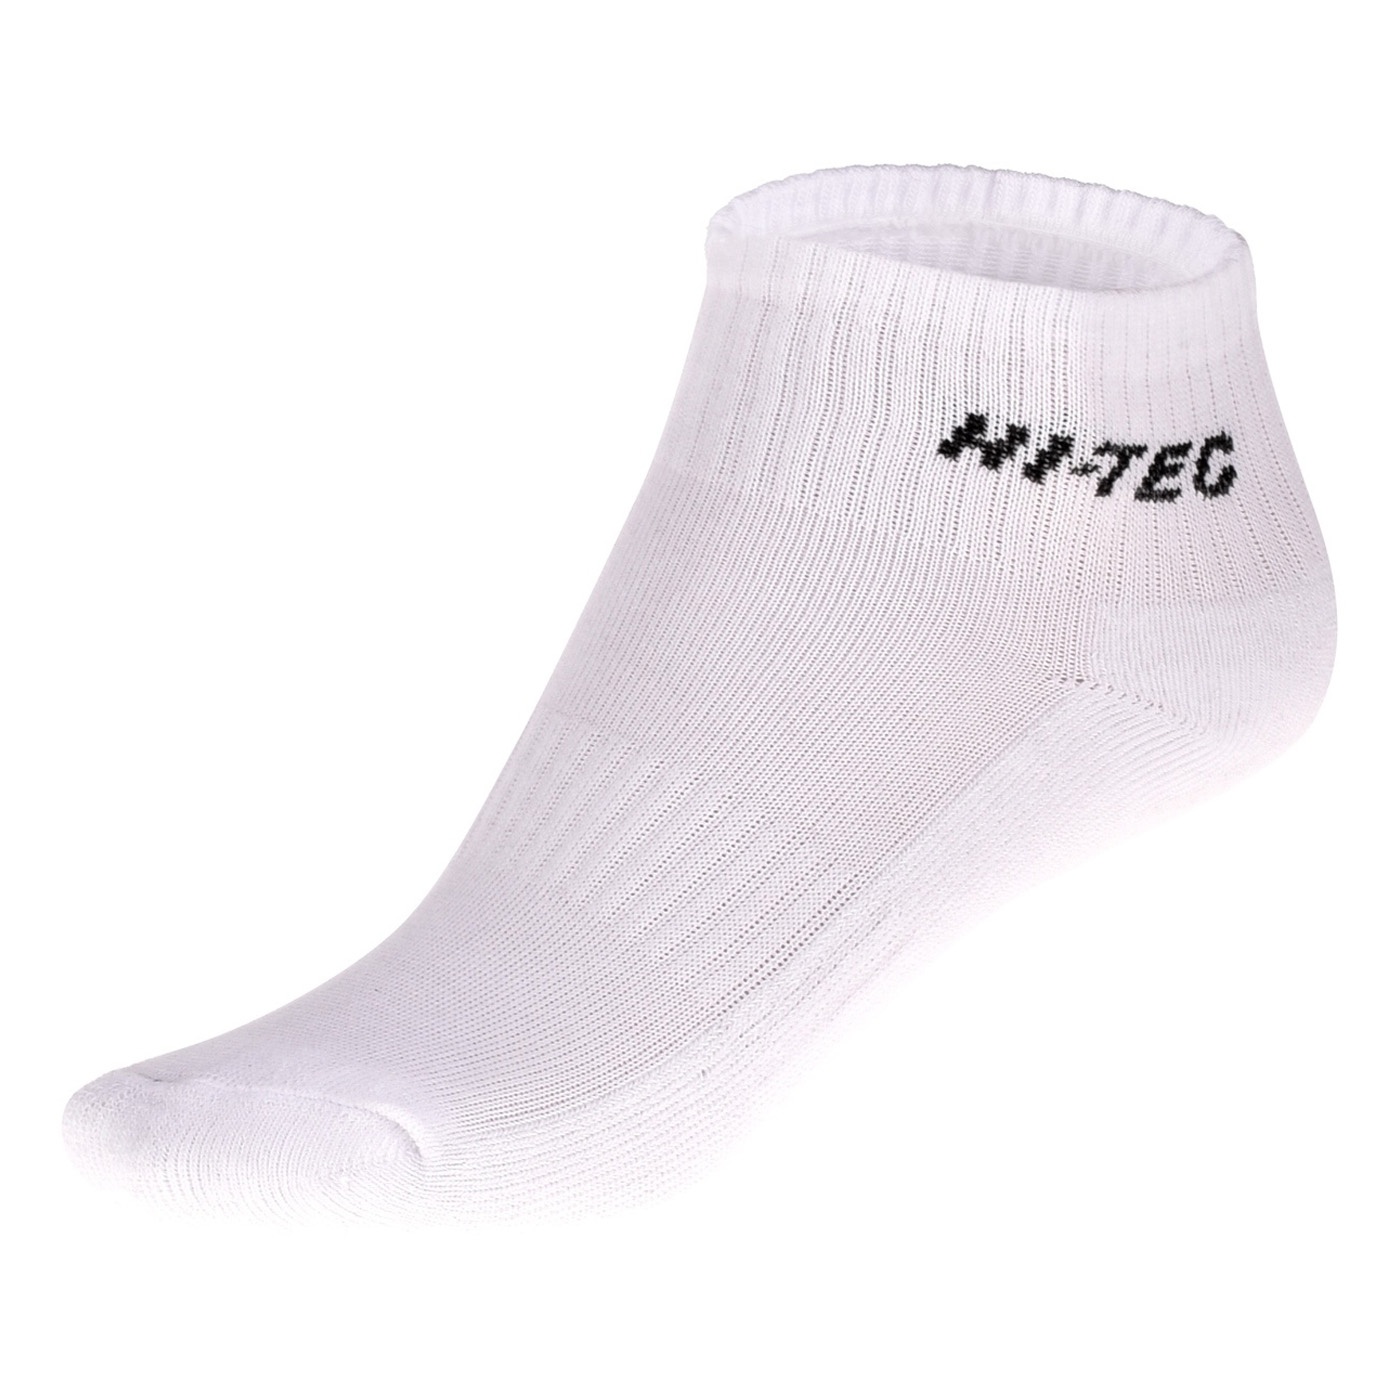 HI-TEC Quarro pack - sada tří párů ponožek Barva: Bílá, Velikost: 36-39